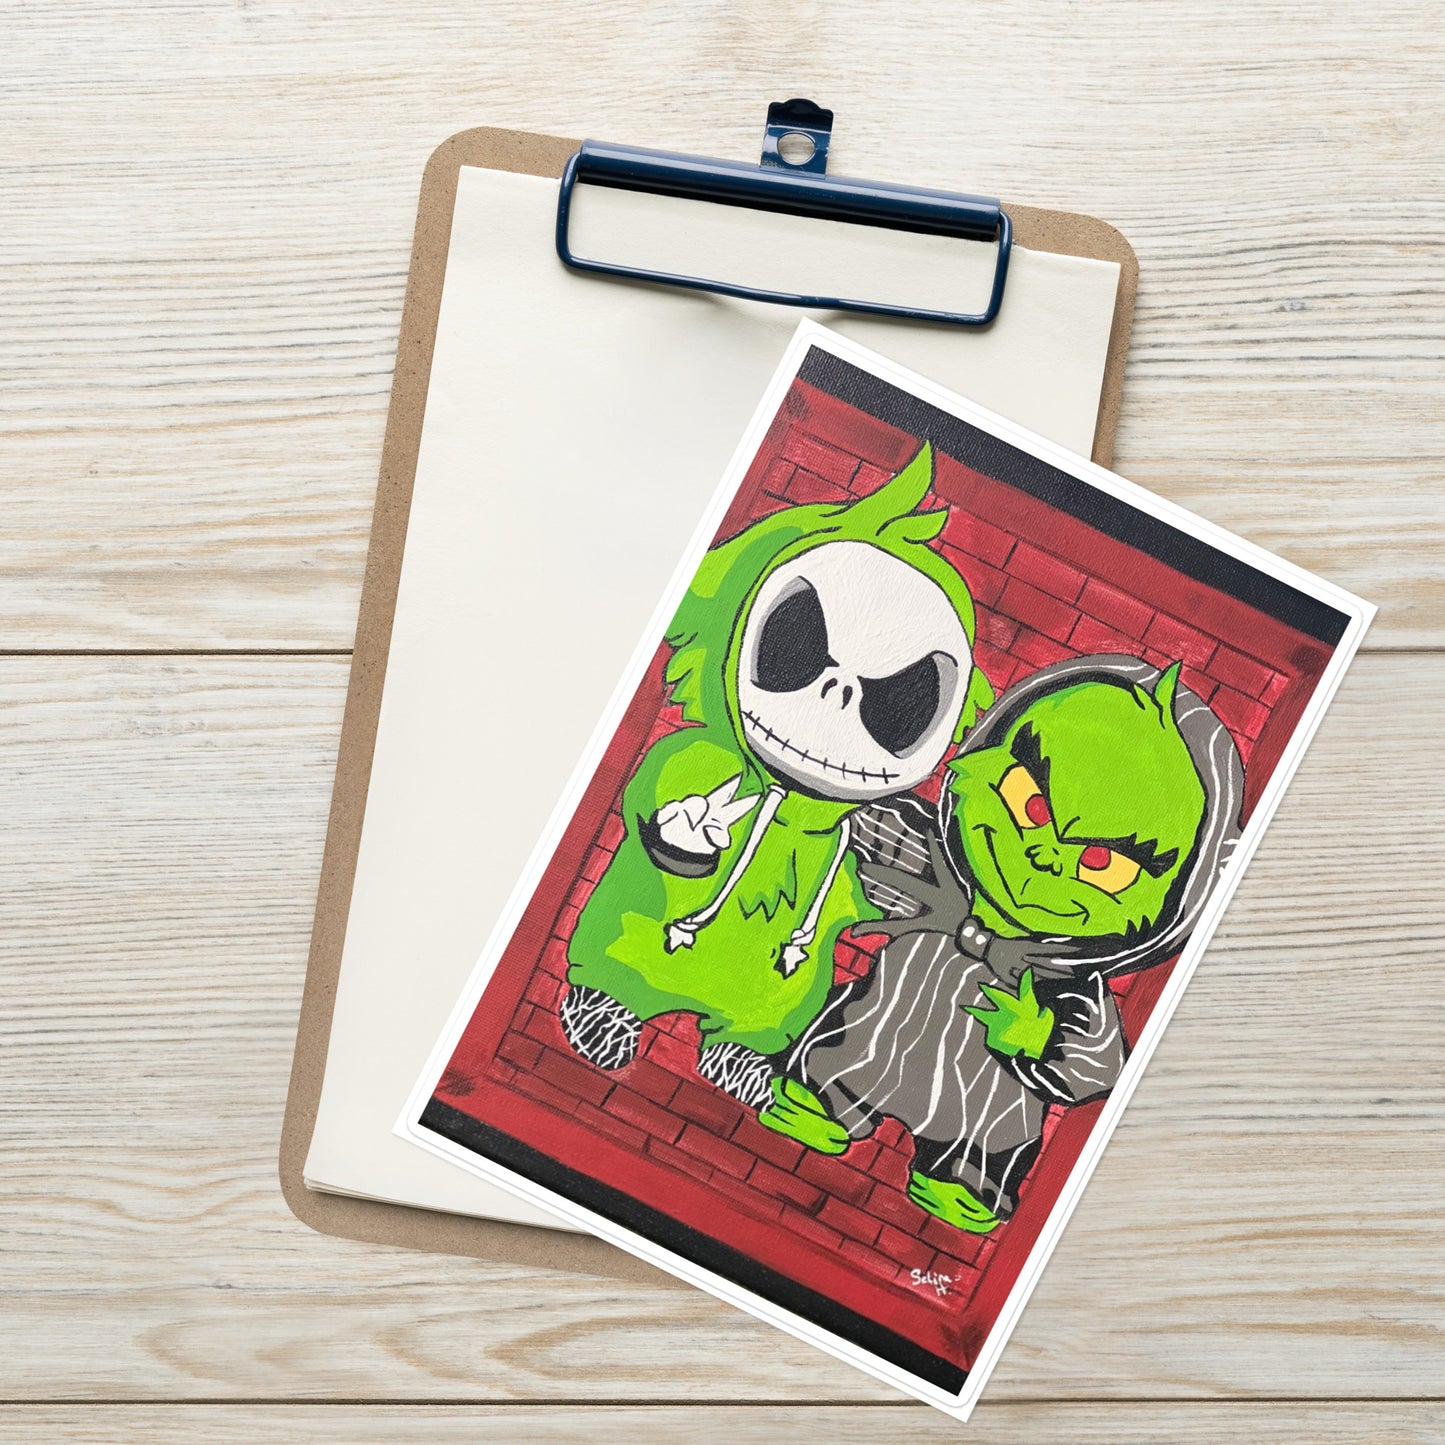 Lil Jack & Lil Grinch Chillen Sticker sheet